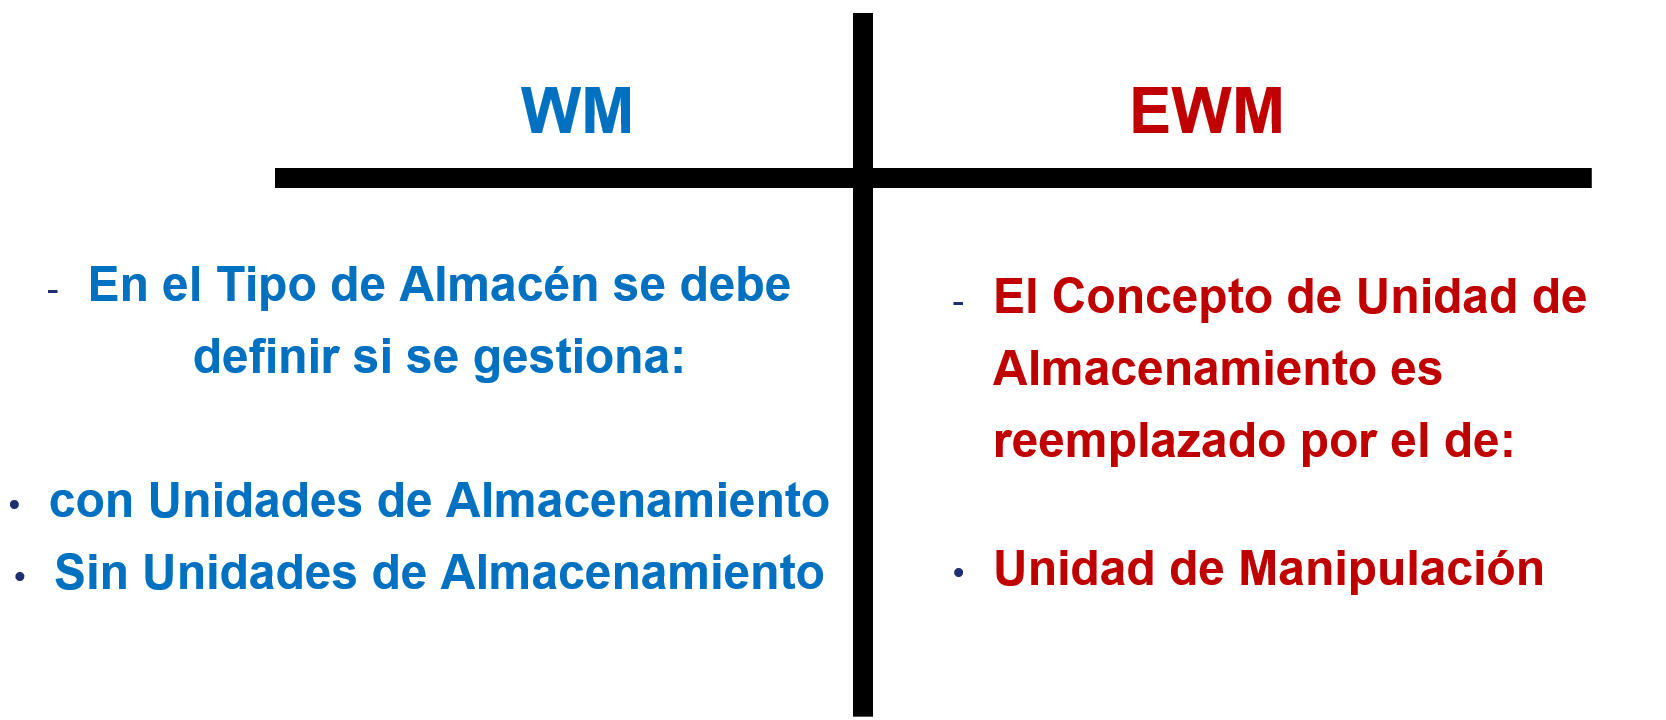 Unidades de Almacenamiento en WM vs EWM